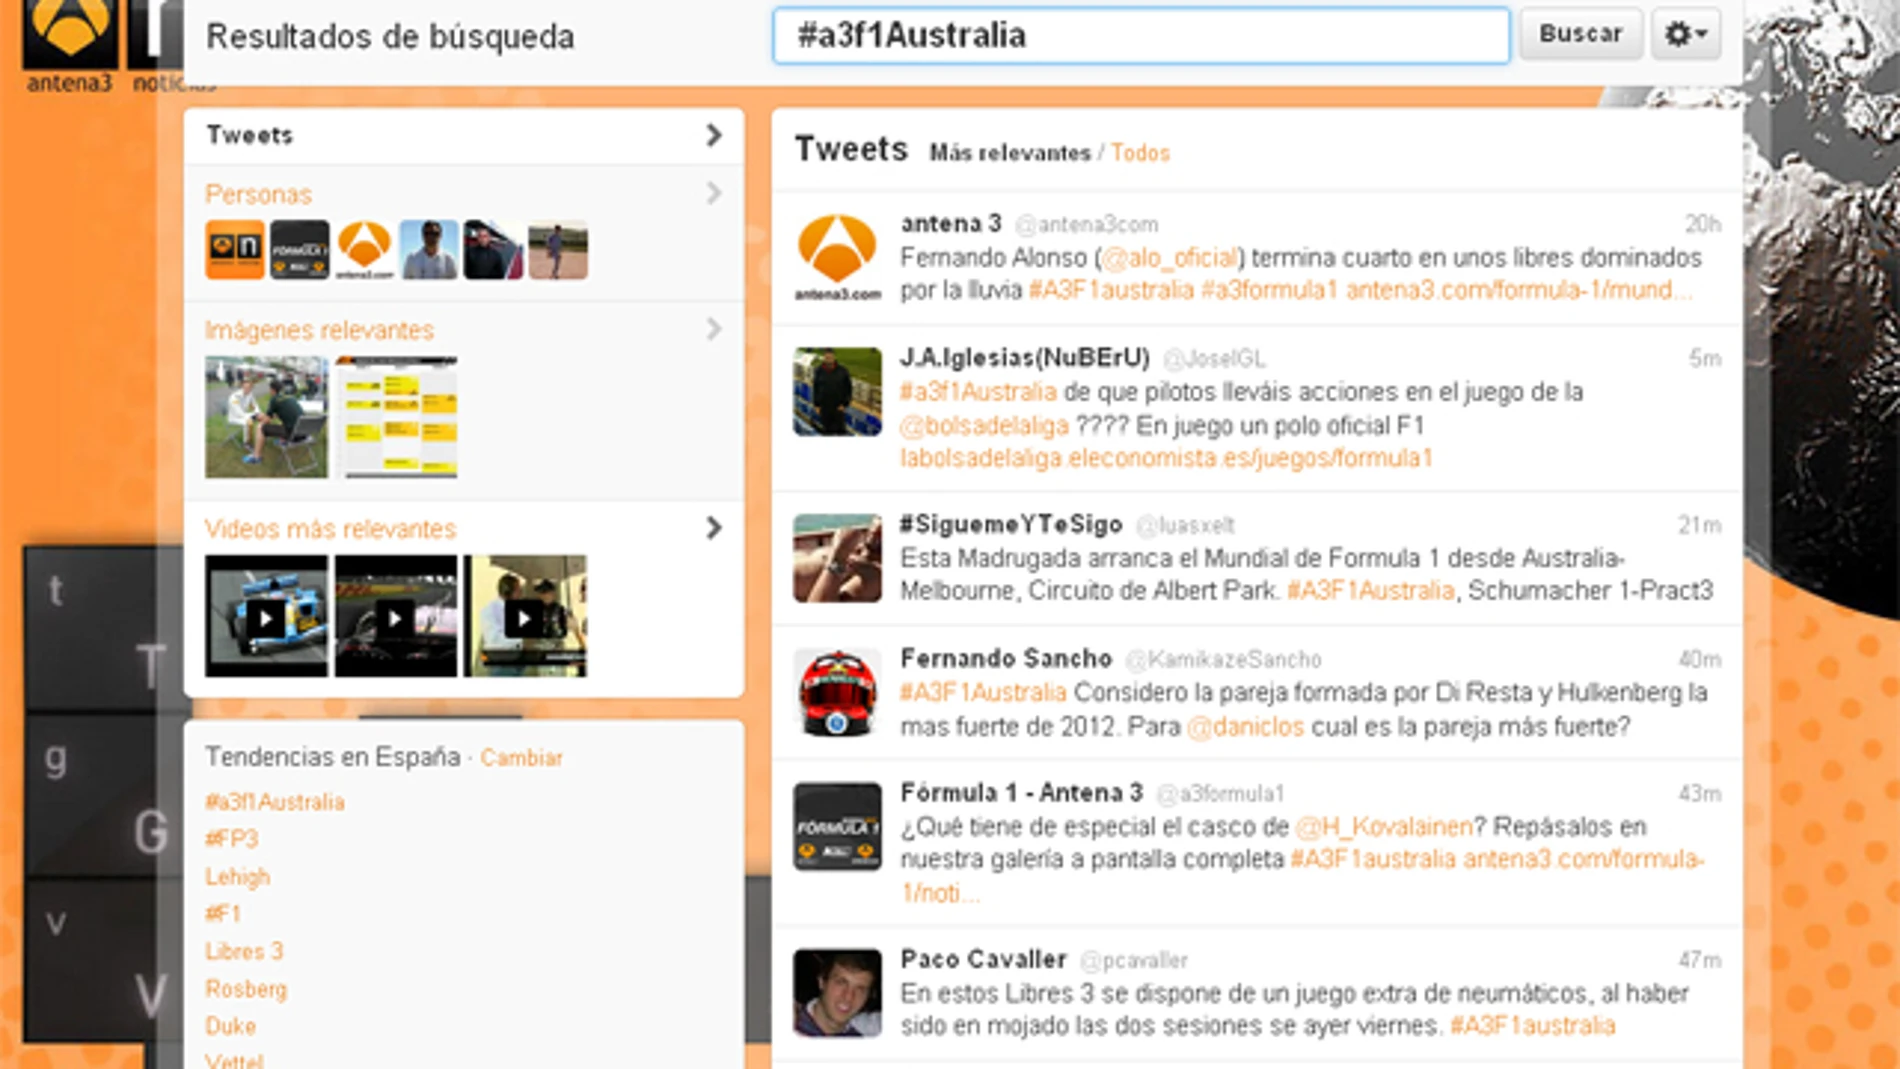 El hashtag #A3F1australia ha vuelto a ser por segundo día consecutivo la tendencia en España